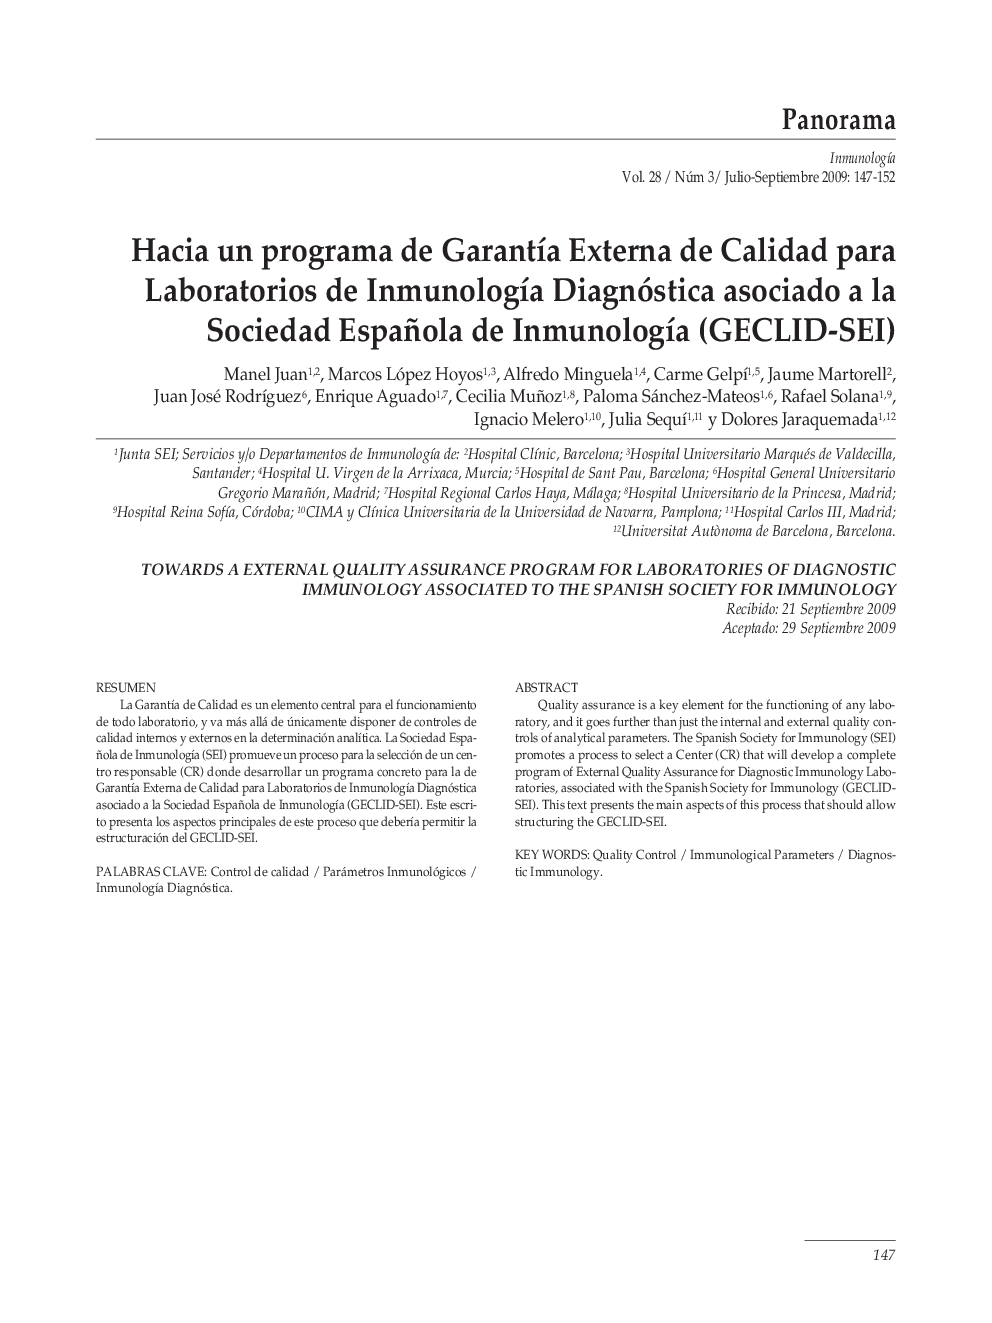 Hacia un programa de GarantÃ­a Externa de Calidad para Laboratorios de InmunologÃ­a Diagnóstica asociado a la Sociedad Española de InmunologÃ­a (GECLID-SEI)